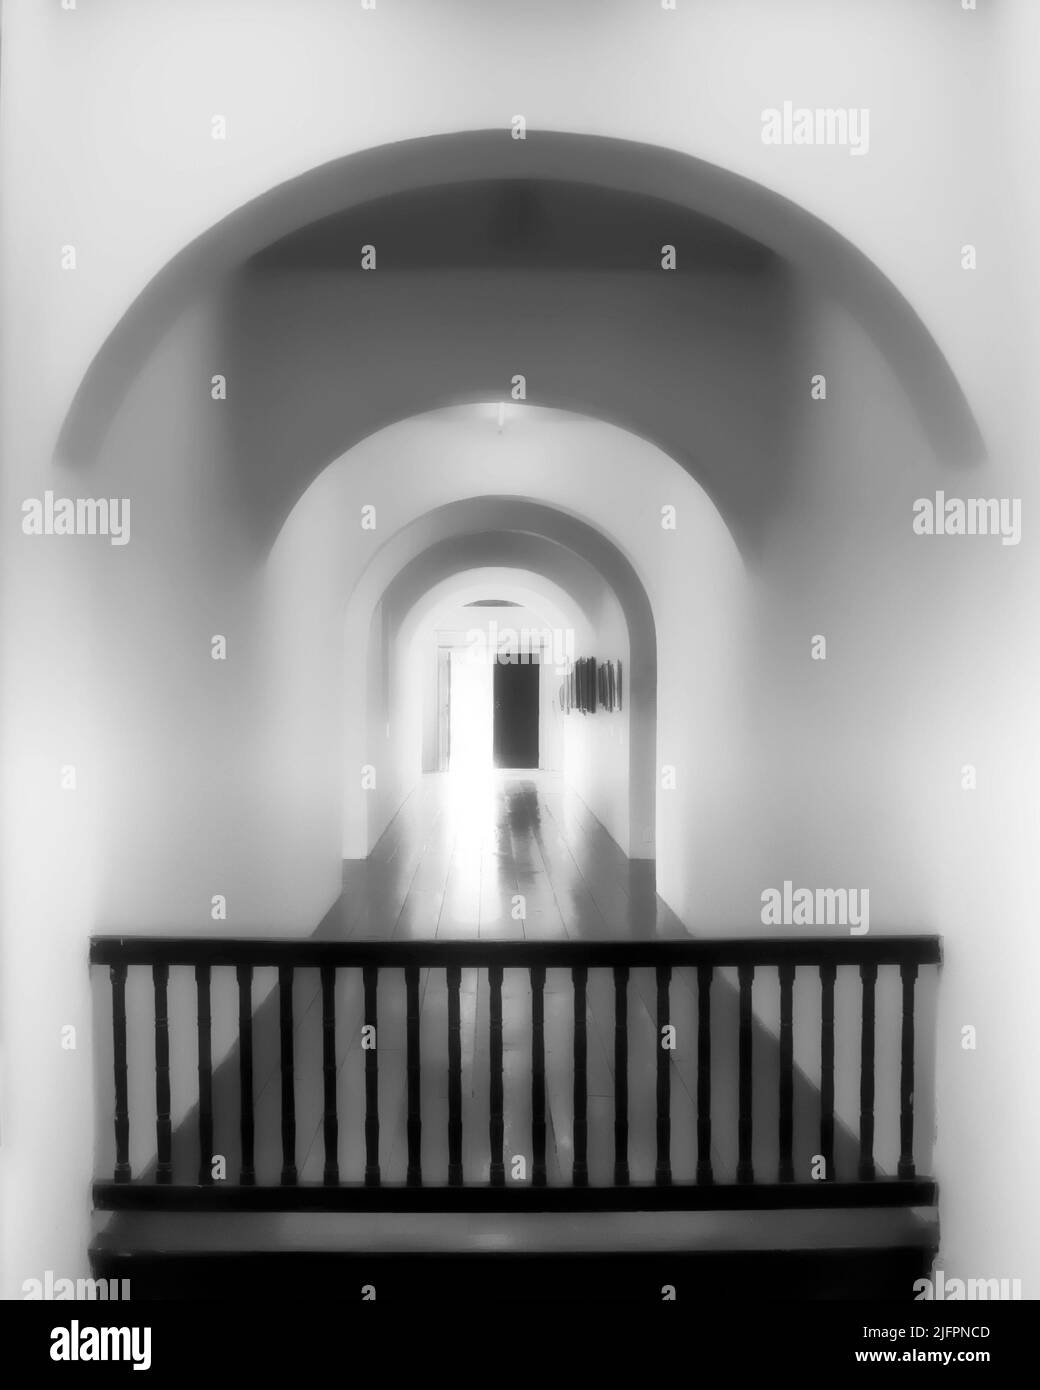 Une lumière éblouissante jaillit dans un couloir vide solitaire par une porte à moitié ouverte, mais une barricade imposante suggère qu'il est impossible de s'échapper de ce couloir Banque D'Images